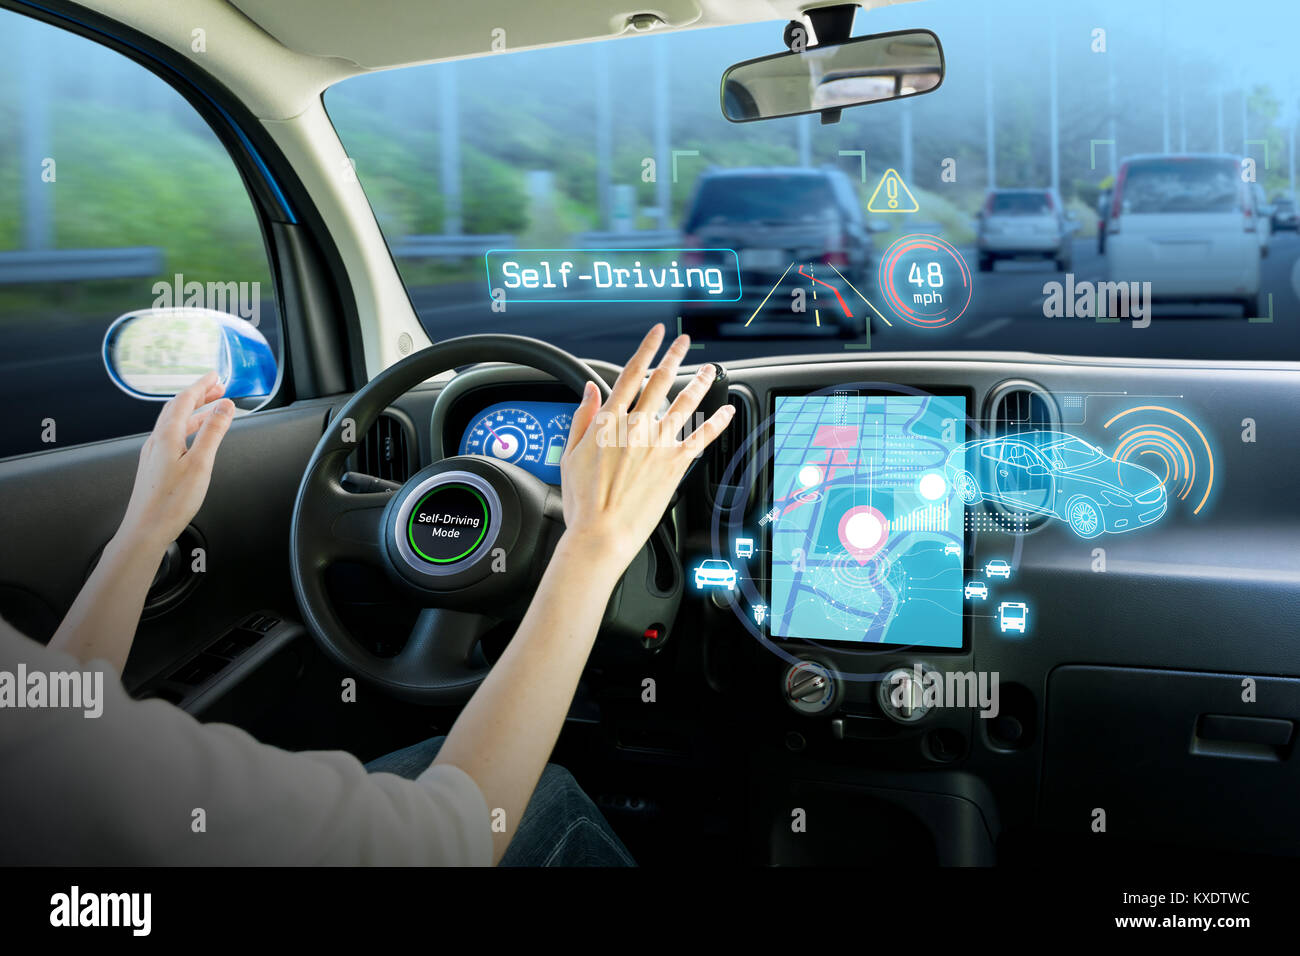 Cockpit du véhicule et l'écran, car la technologie de l'électronique, l'automobile, voiture autonome, résumé visuel de l'image Banque D'Images